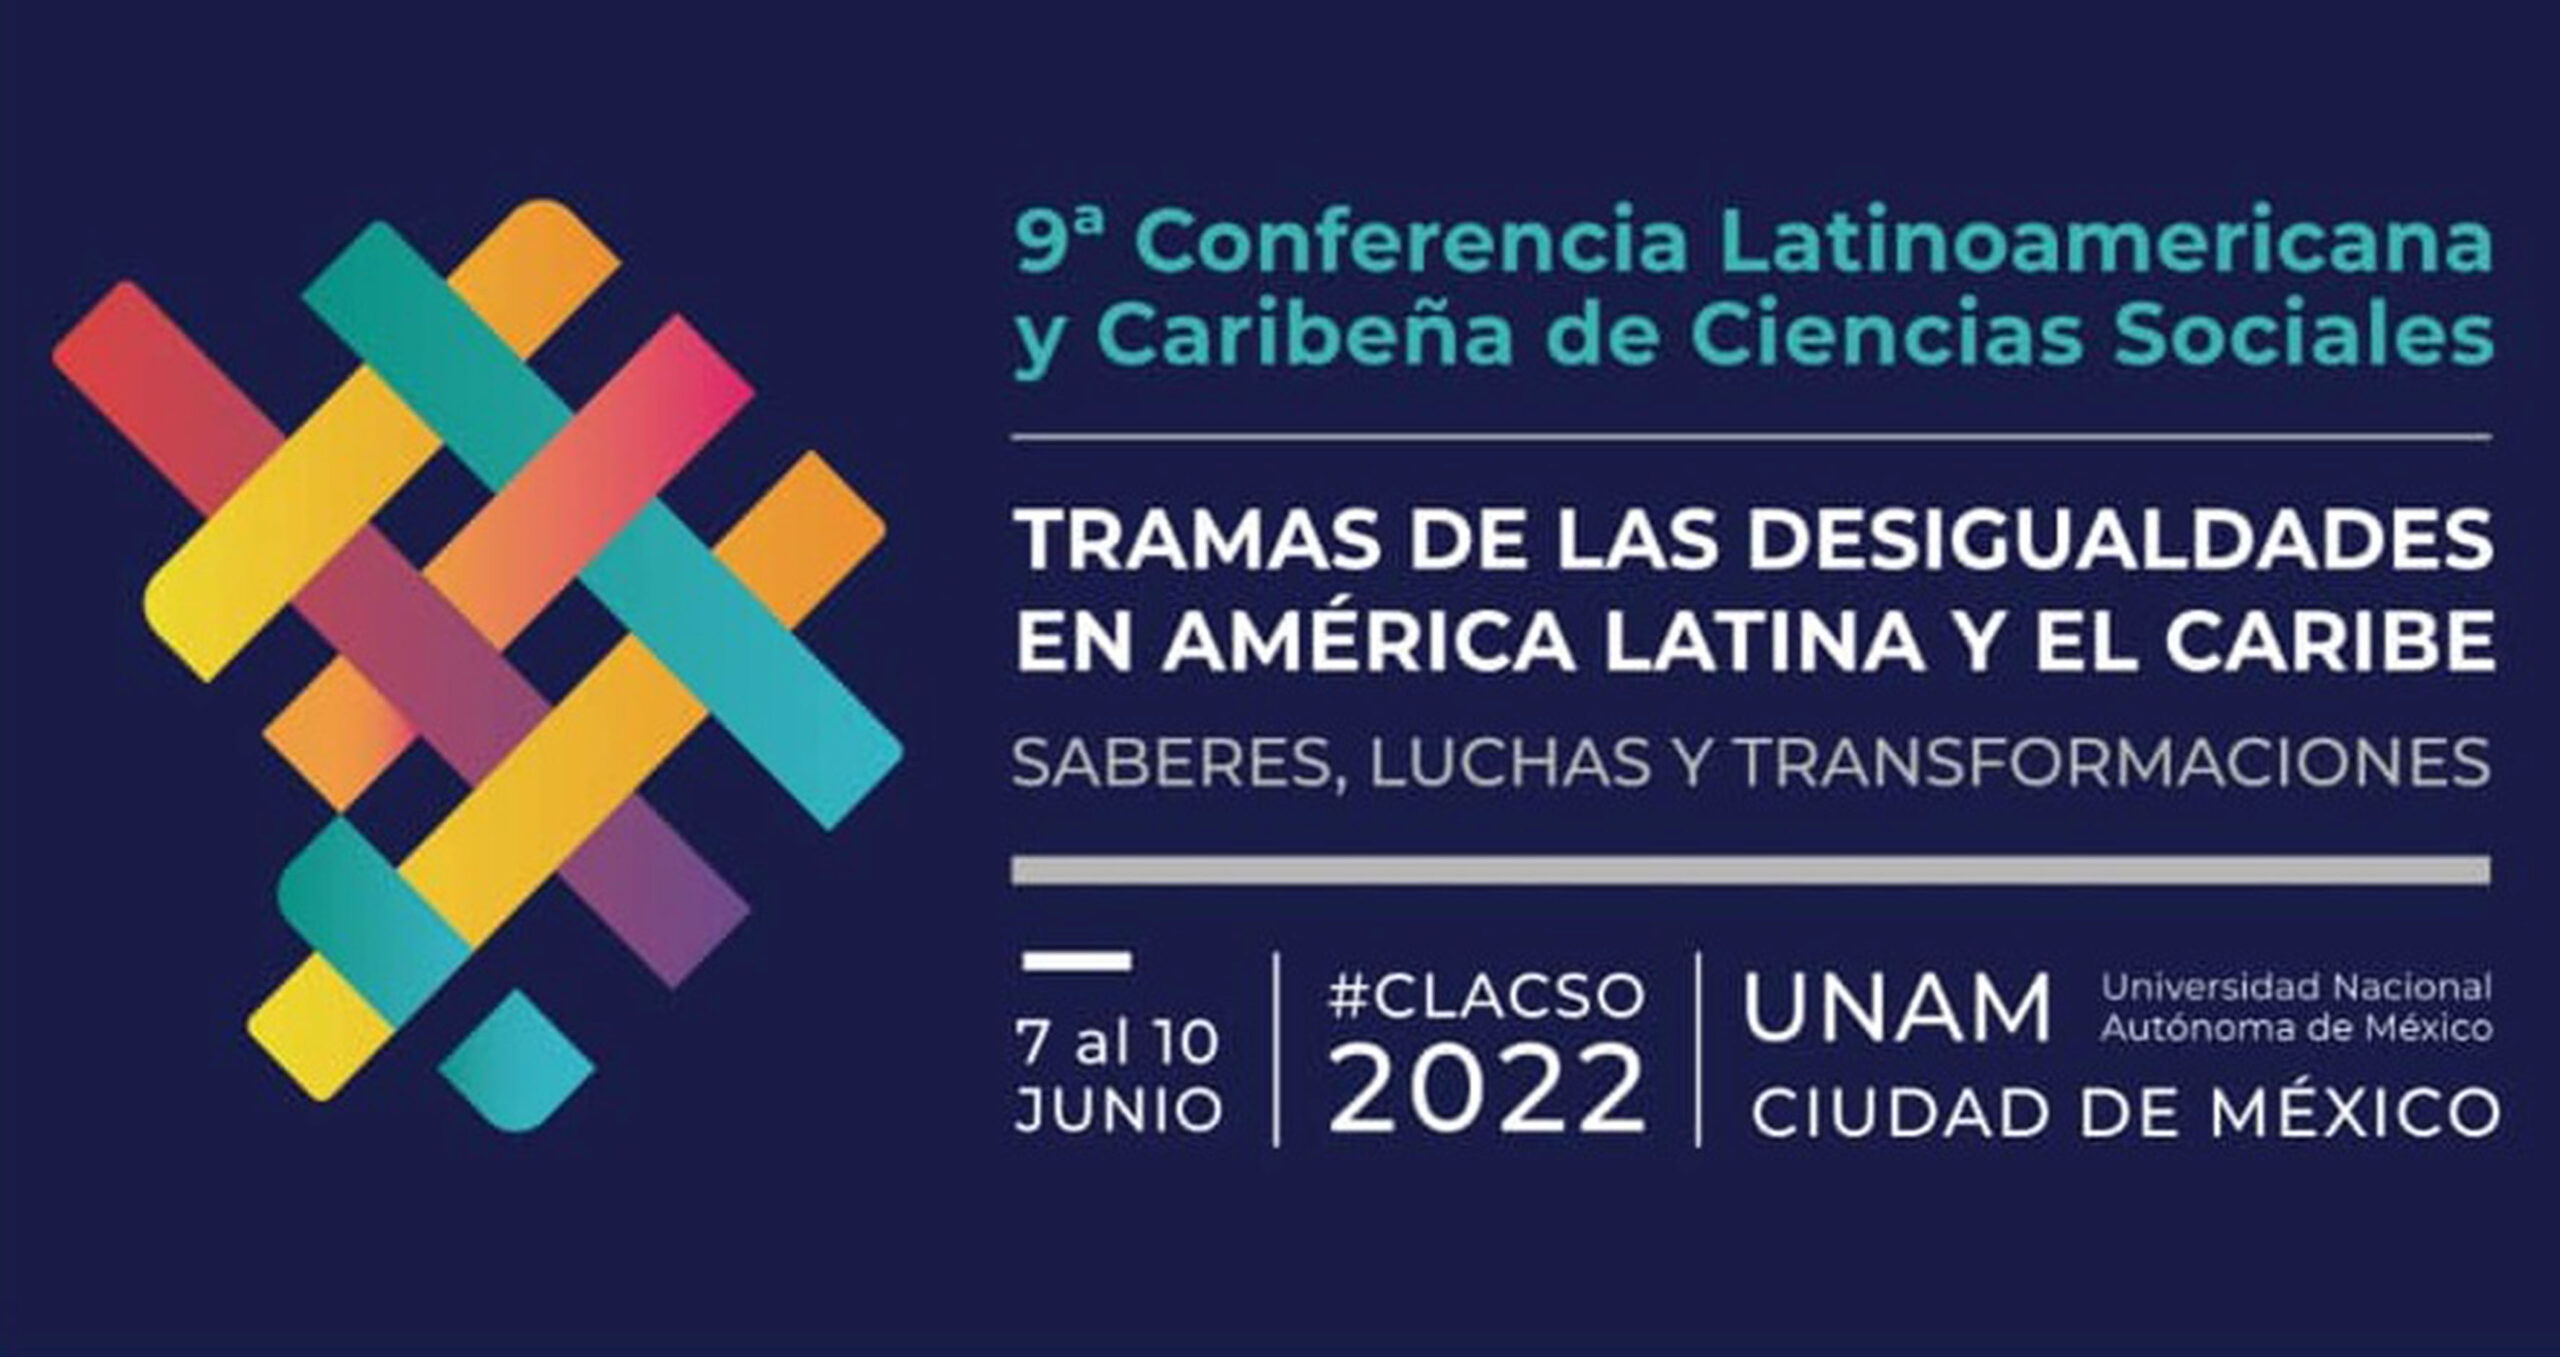 UNAM, sede de la 9ª Conferencia Latinoamericana y Caribeña de Ciencias Sociales